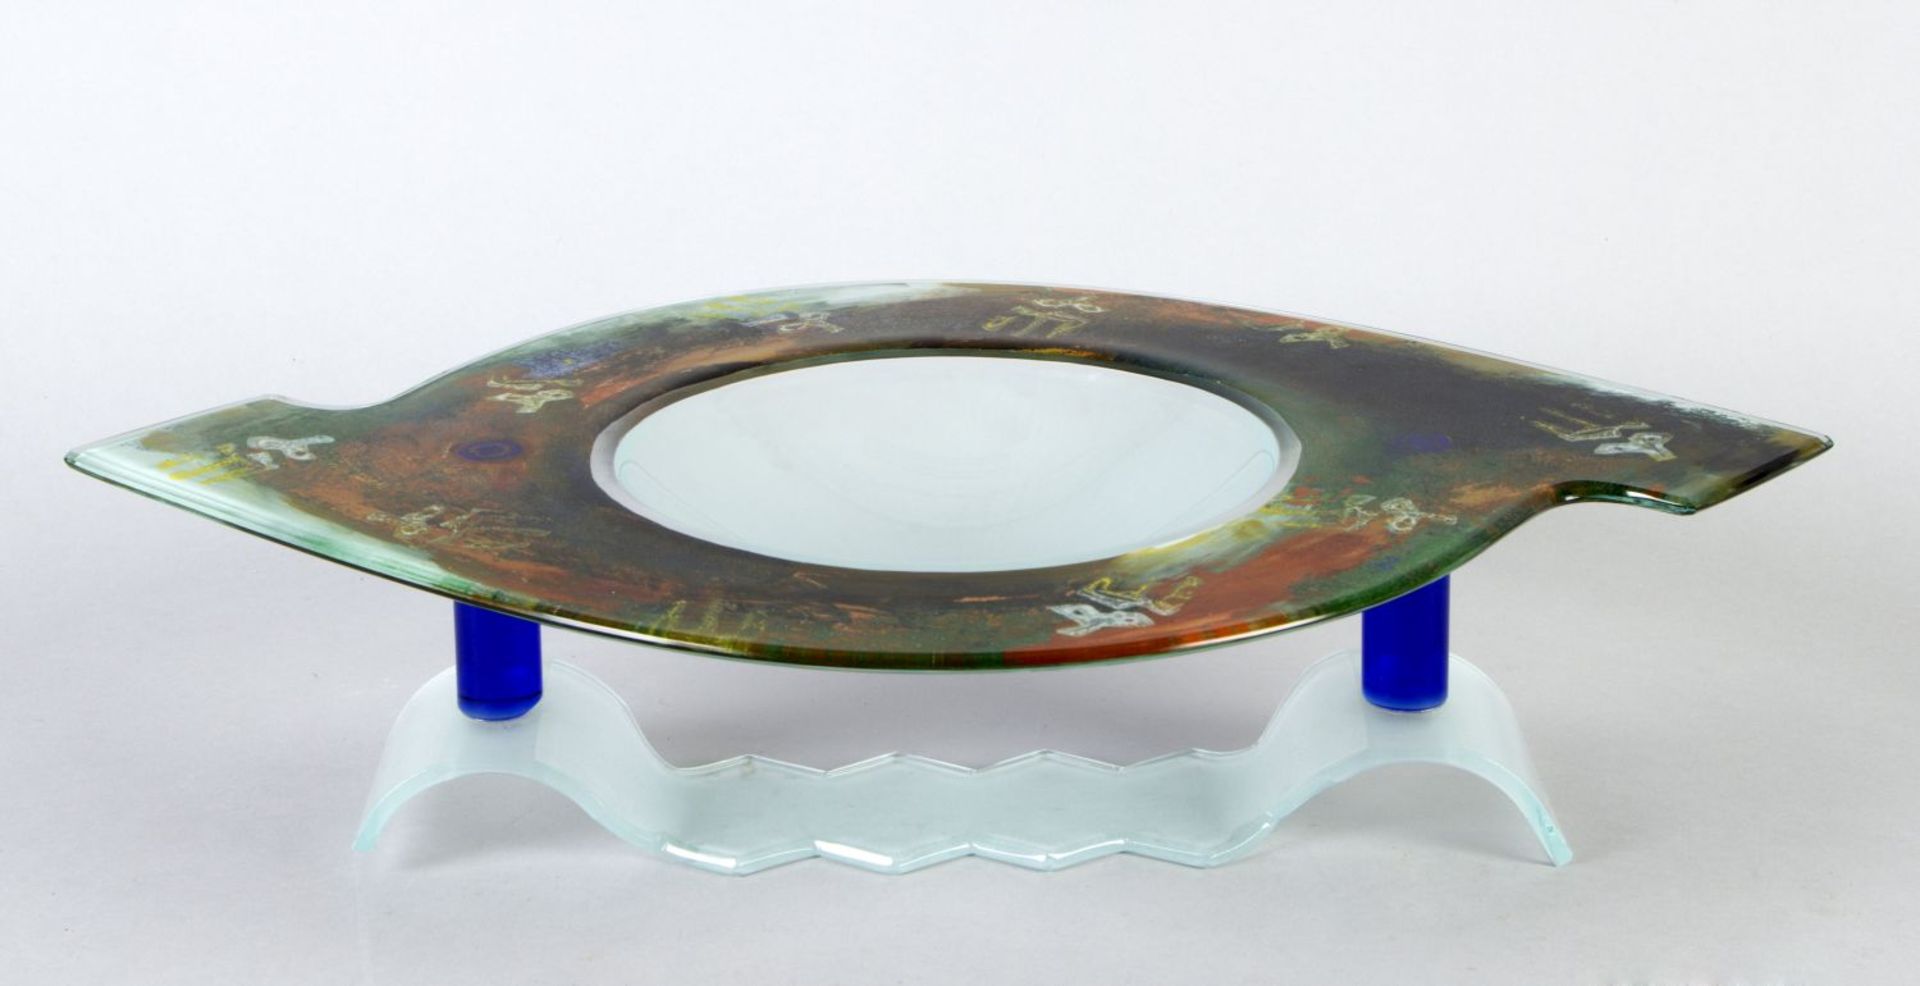 SchaleFarbloses Glas, tlw. azurblau gefärbt. Bunte Pulveraufschmelzungen und abstrakt figürliche